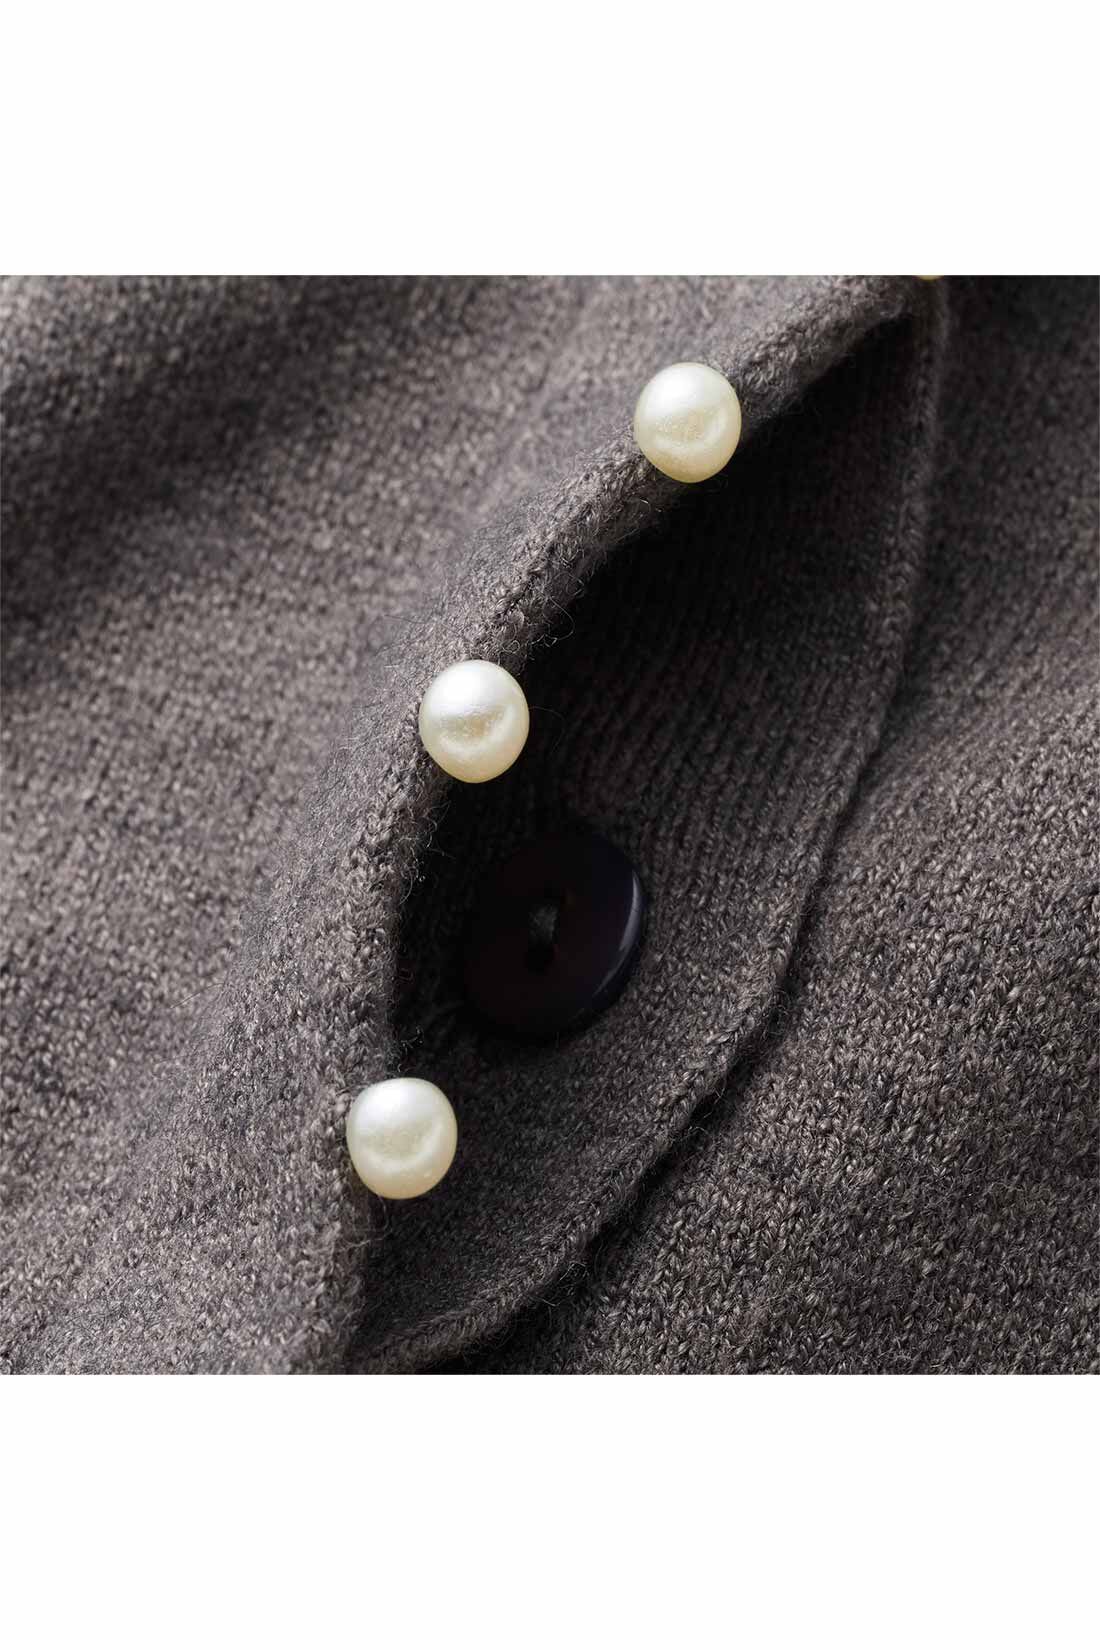 DRECO by IEDIT|【3～10日でお届け】IEDIT[イディット]　アクセサリーみたいなミニパールが上品な 柄編み袖のカーディガン〈グレー〉|フロントボタンを隠した比翼仕立て。パールの飾りが引き立つデザインに。